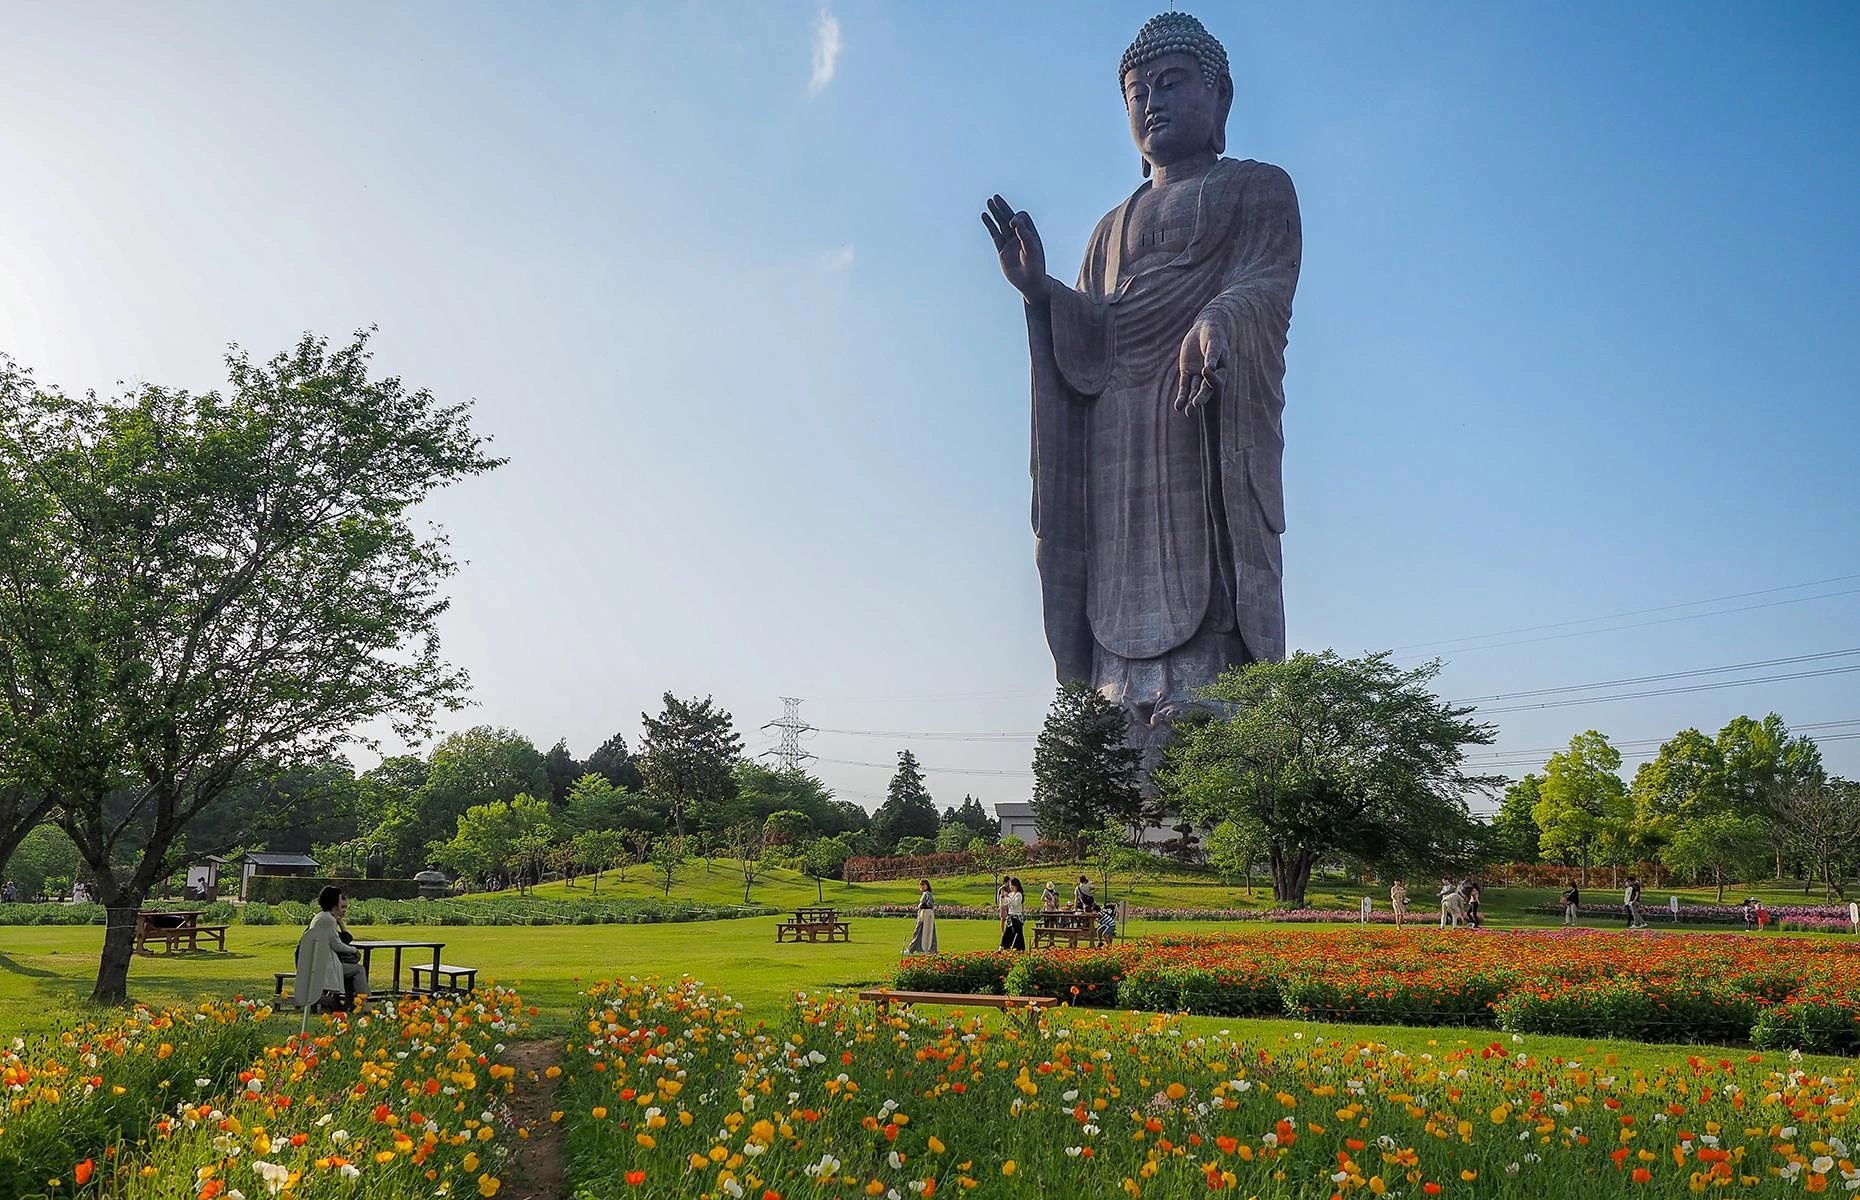 Ushiku Daibutsu, Ibaraki, Nhật Bản: Là bức tượng cao nhất thế giới từ năm 1993 đến 2002, Ushiku Daibutsu có tổng chiều cao 120 m, bao gồm cả chân đế và đài sen. Công trình có một tầng quan sát và 3 tầng khác đóng vai trò như một bảo tàng. Tượng đồng Ushiku Daibutsu được xây dựng để kỷ niệm ngày sinh của nhà sư Shinran, người đã thành lập Jōdo Shinshū, nhánh Phật giáo phát triển rộng ở Nhật Bản. Ảnh: Eedology.